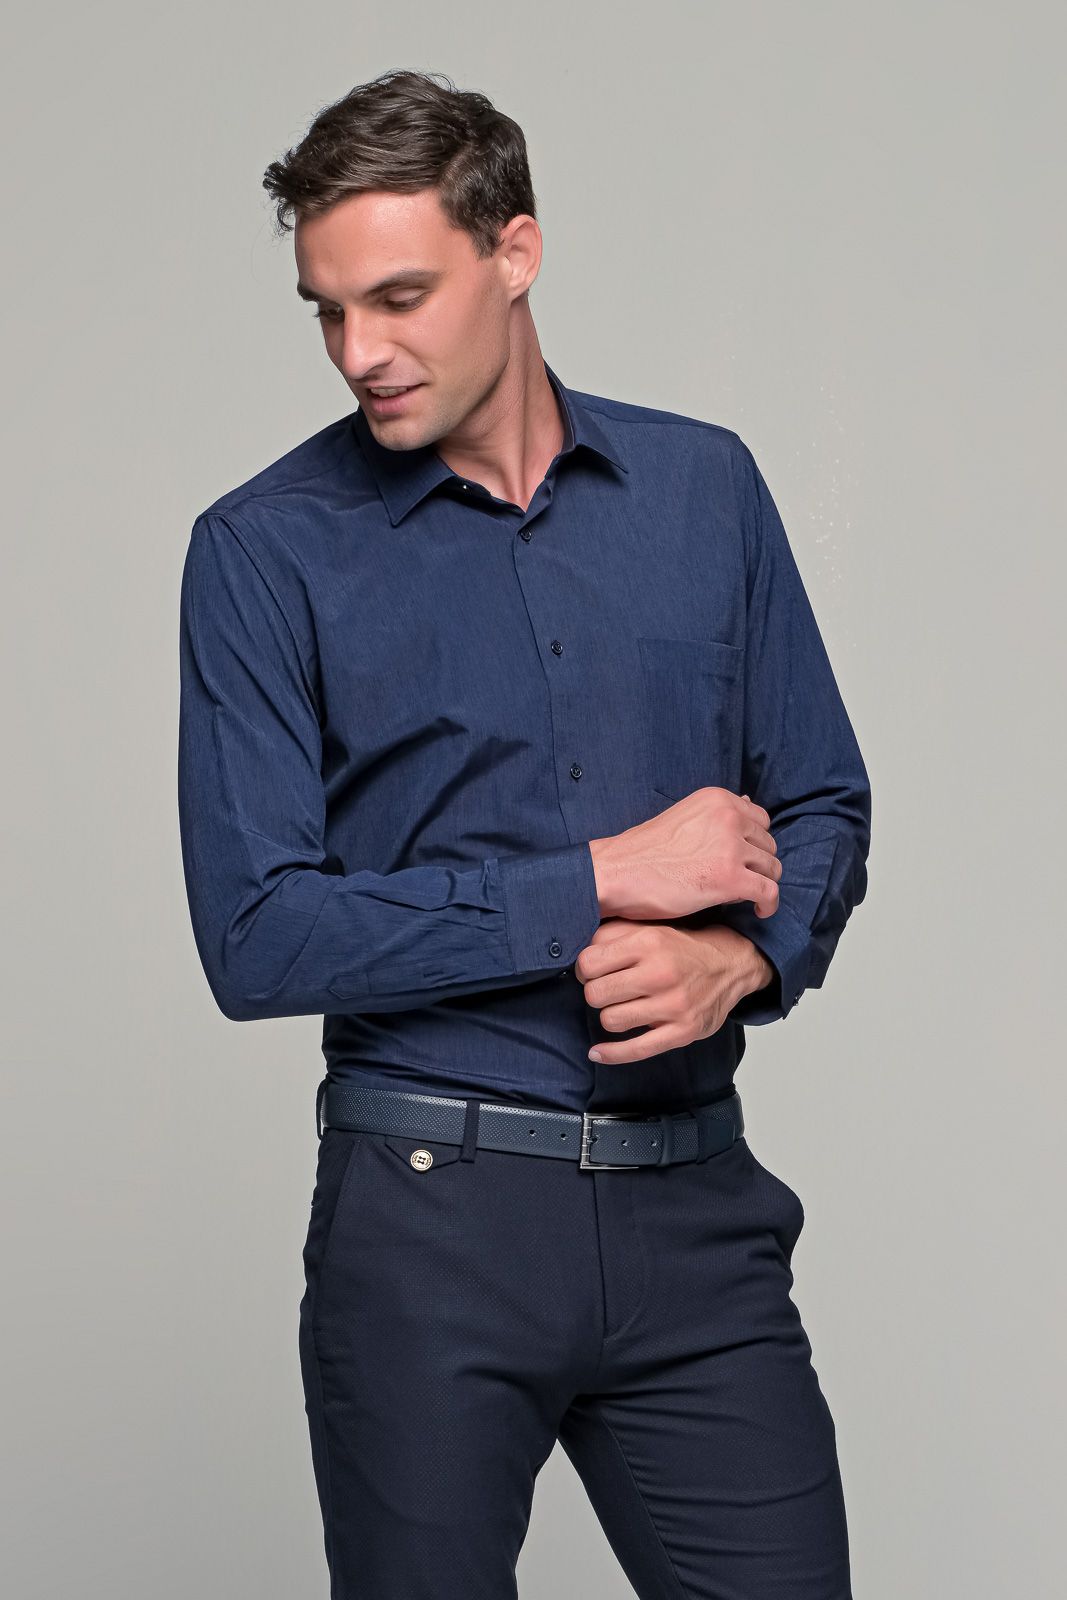 Μπλε navy ανδρικό πουκάμισο PAPARAZZI με τσεπάκι - Classic fit